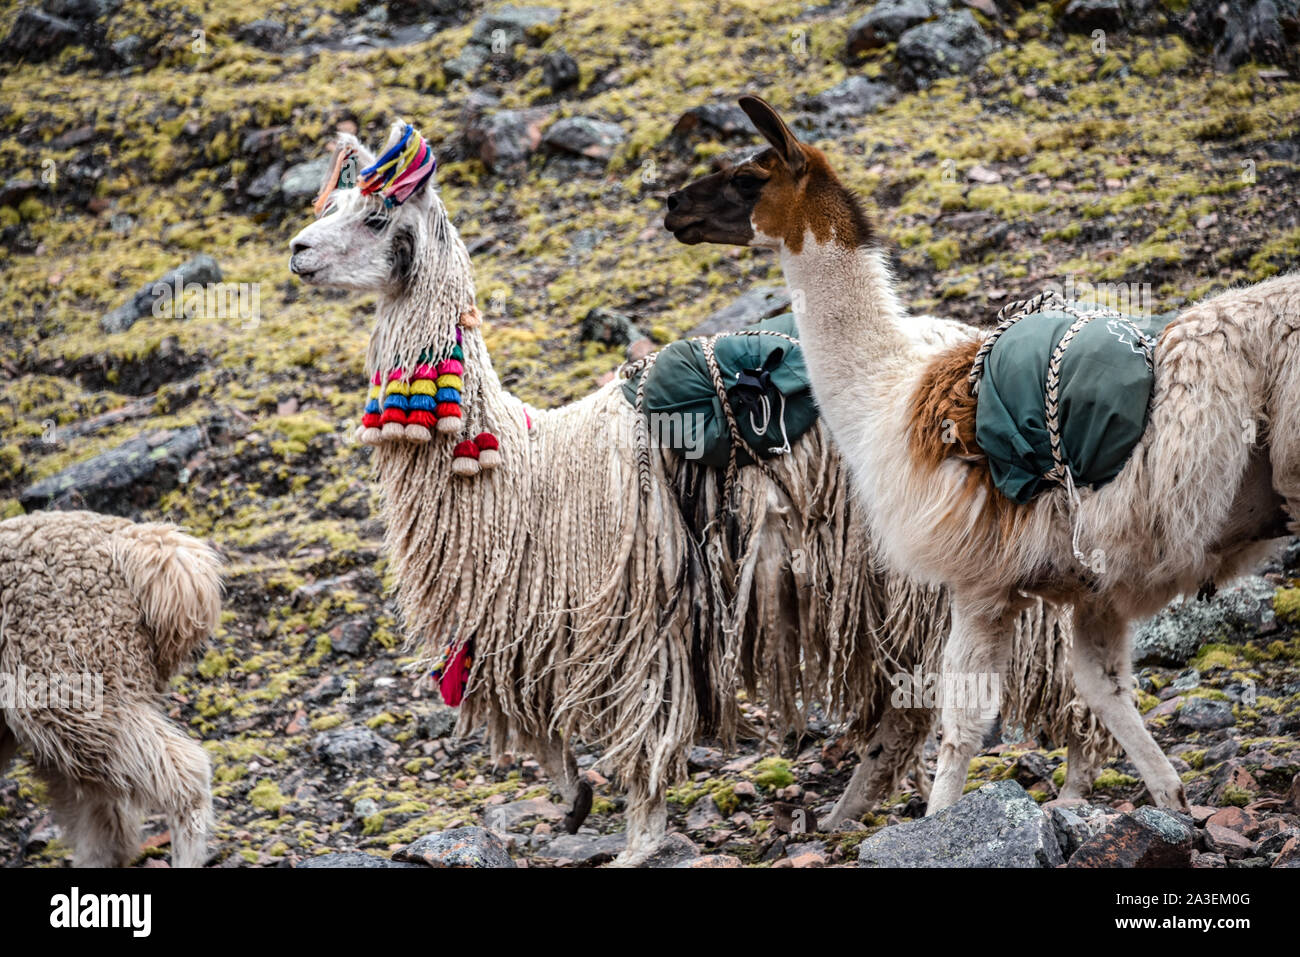 A pack of Llamas carry cargo along a trail in the Cordillera Vilcanota. Ausangate, Cusco, Peru Stock Photo